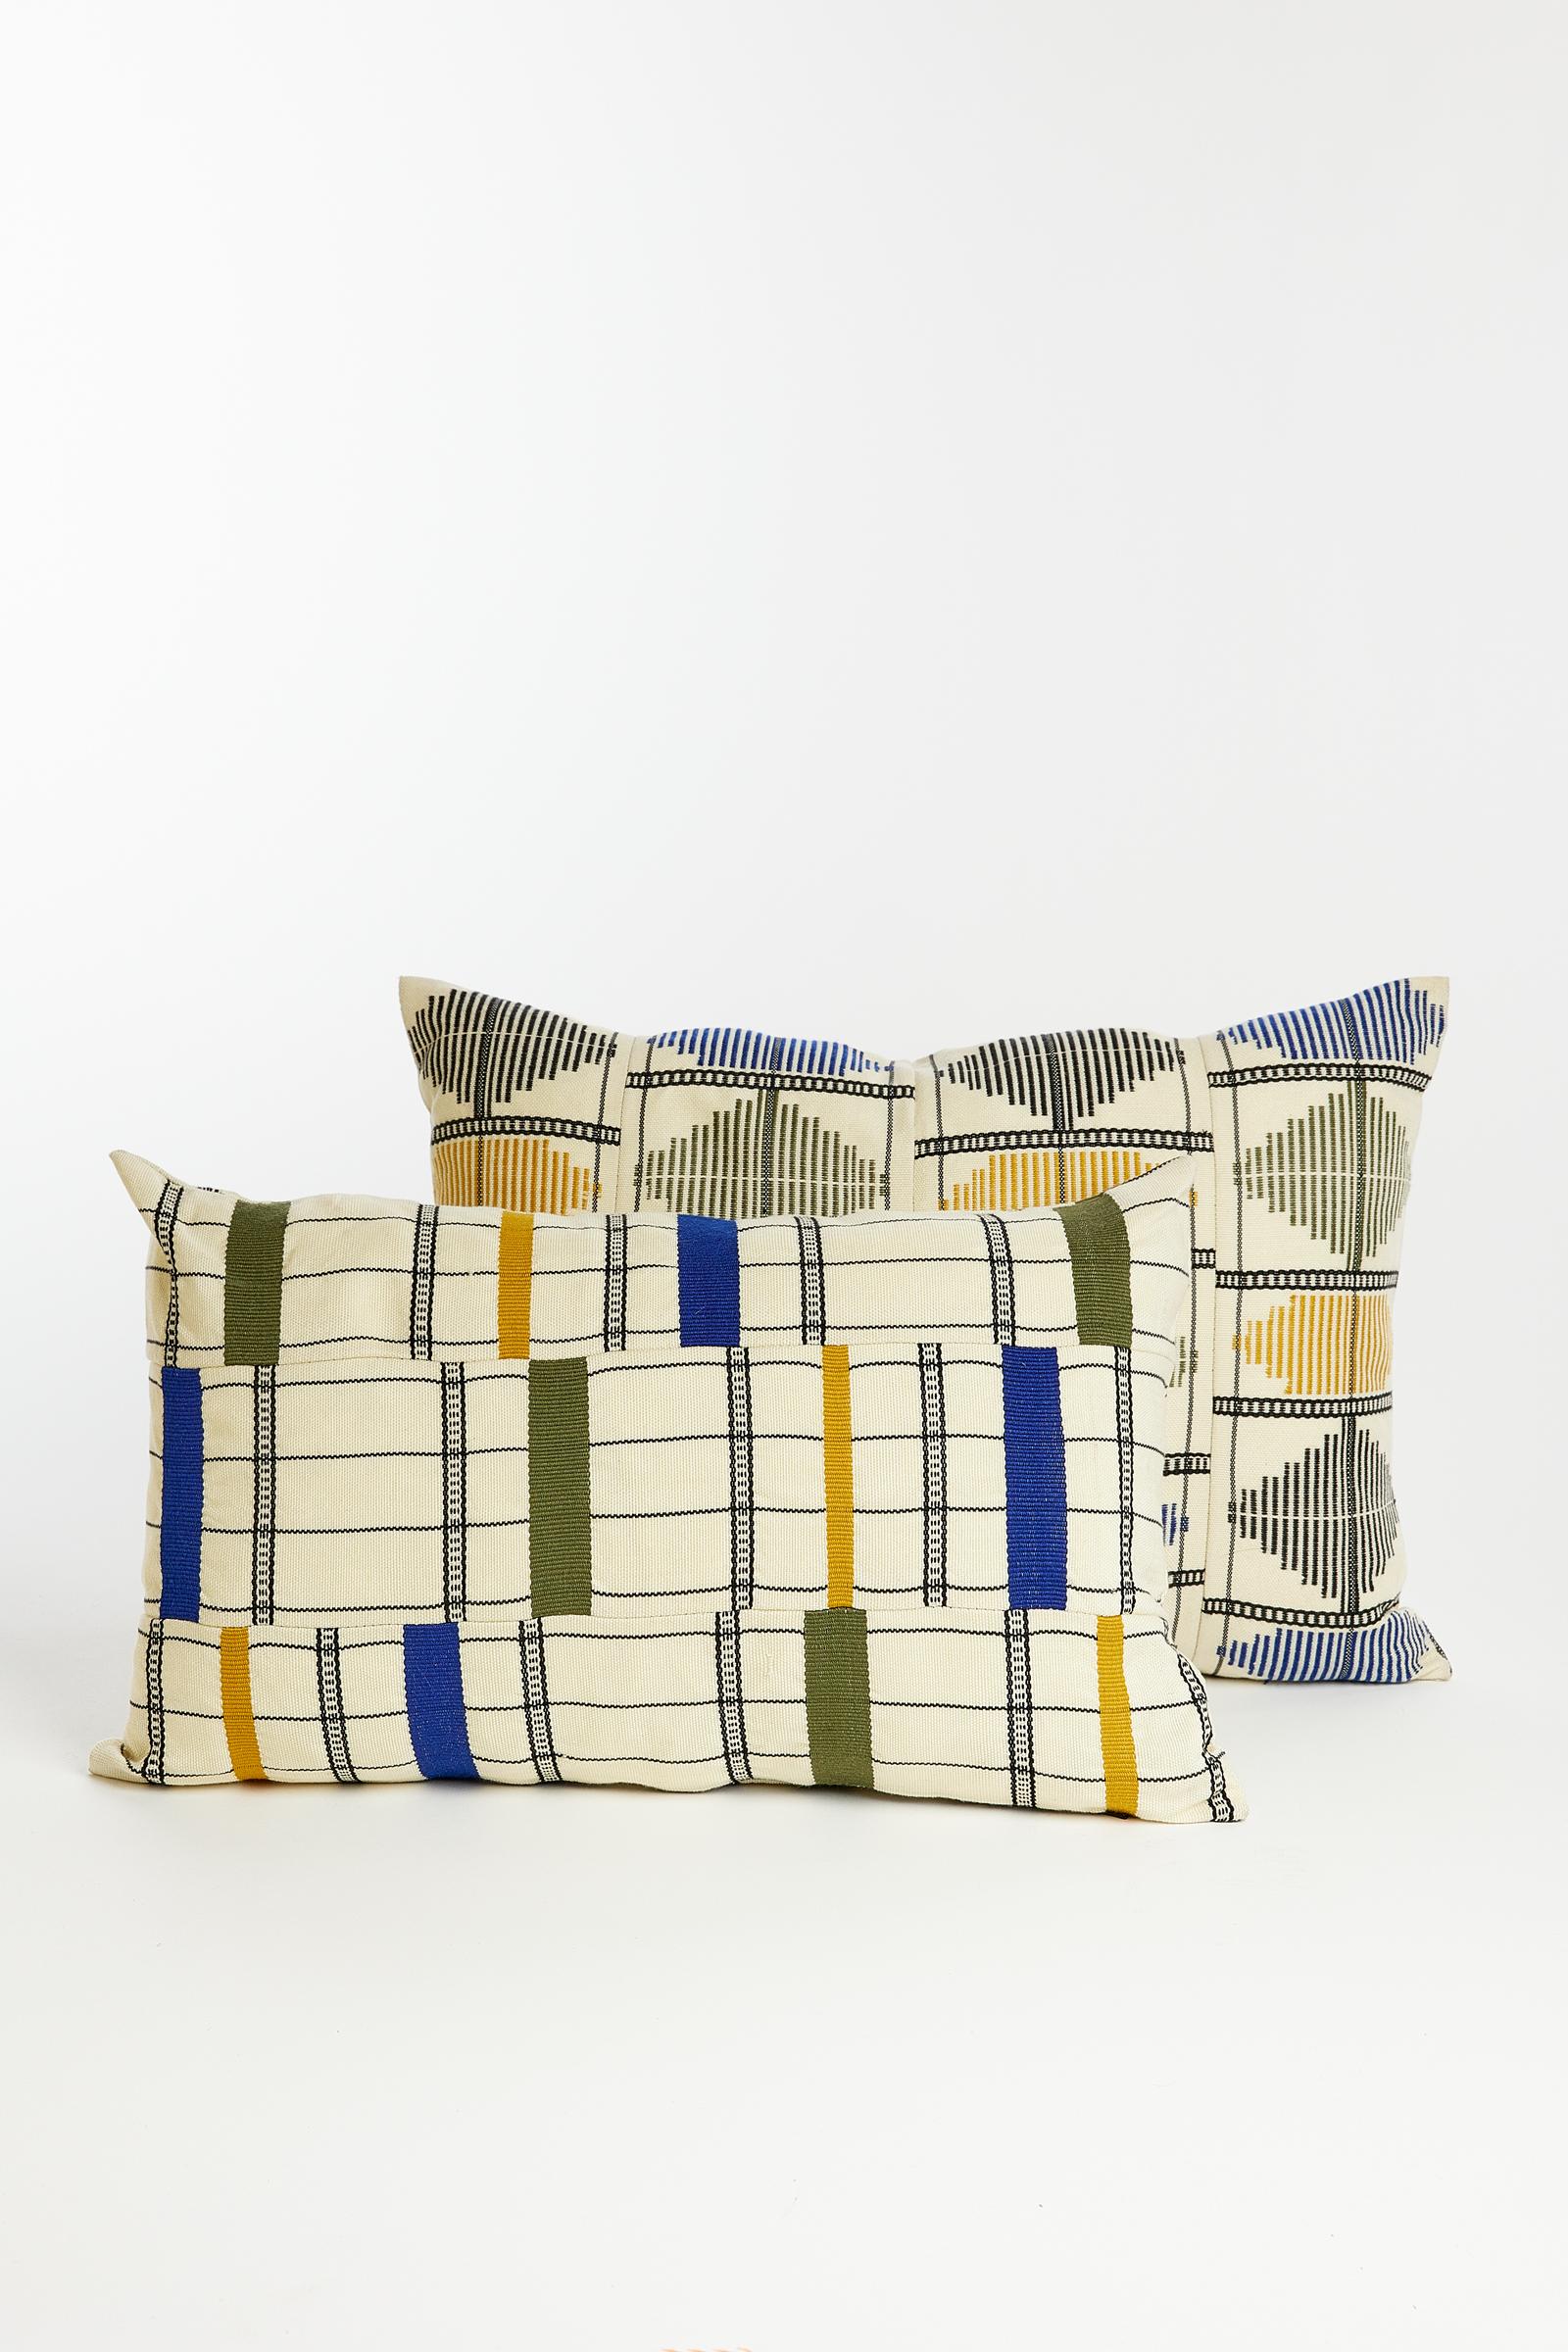 Bauhaus Contemporary Golden Editions Cushion Handwoven Cotton Decorative Kente Indigo